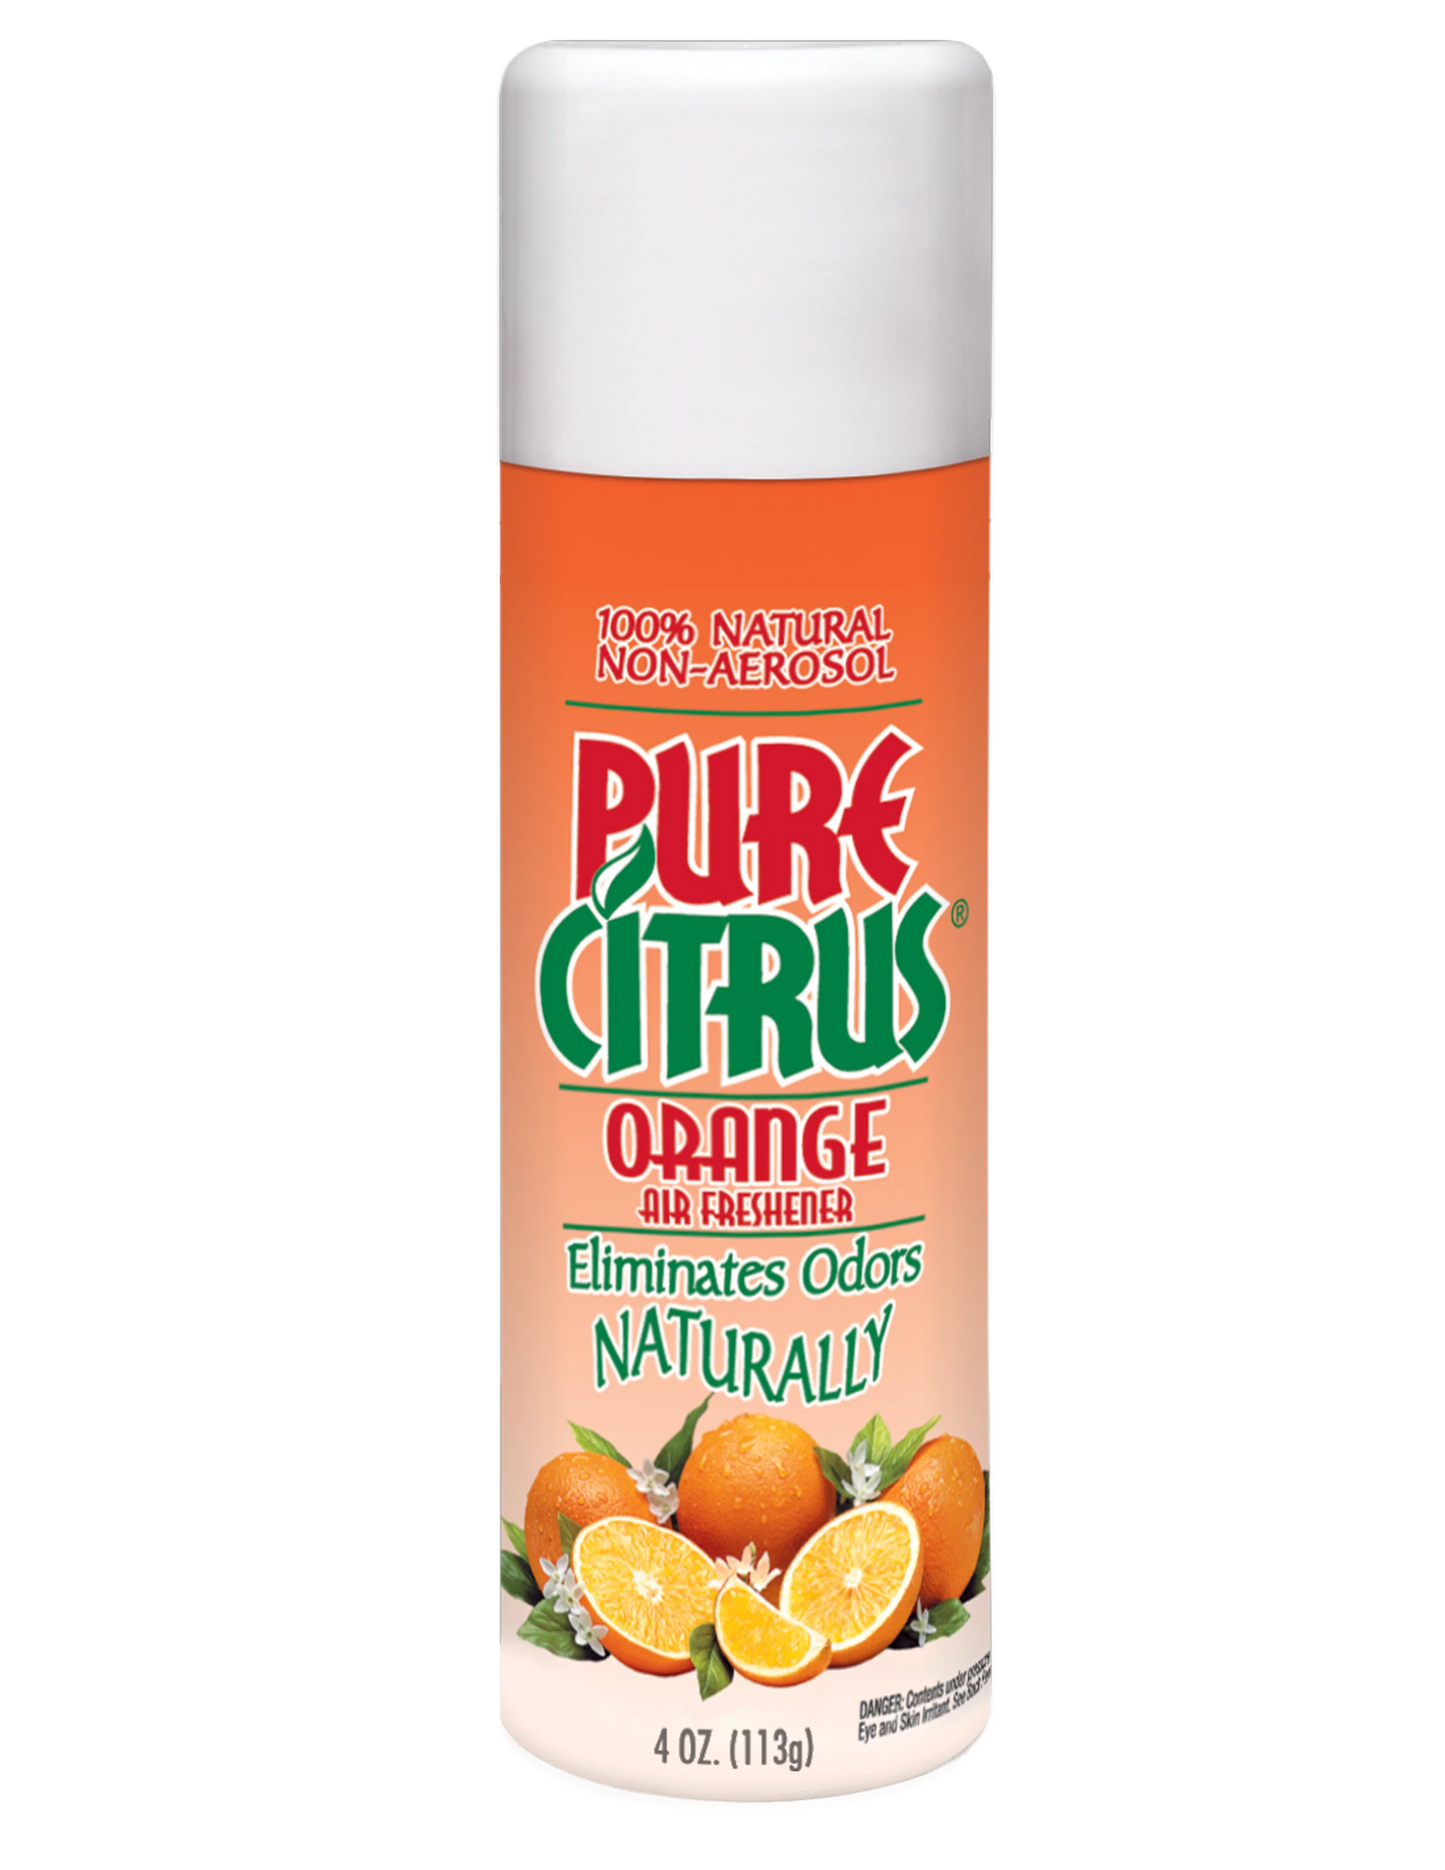 Pure Citrus Orange Air Freshener, 4oz. Orange Scented Non-Aerosol Air Freshener.